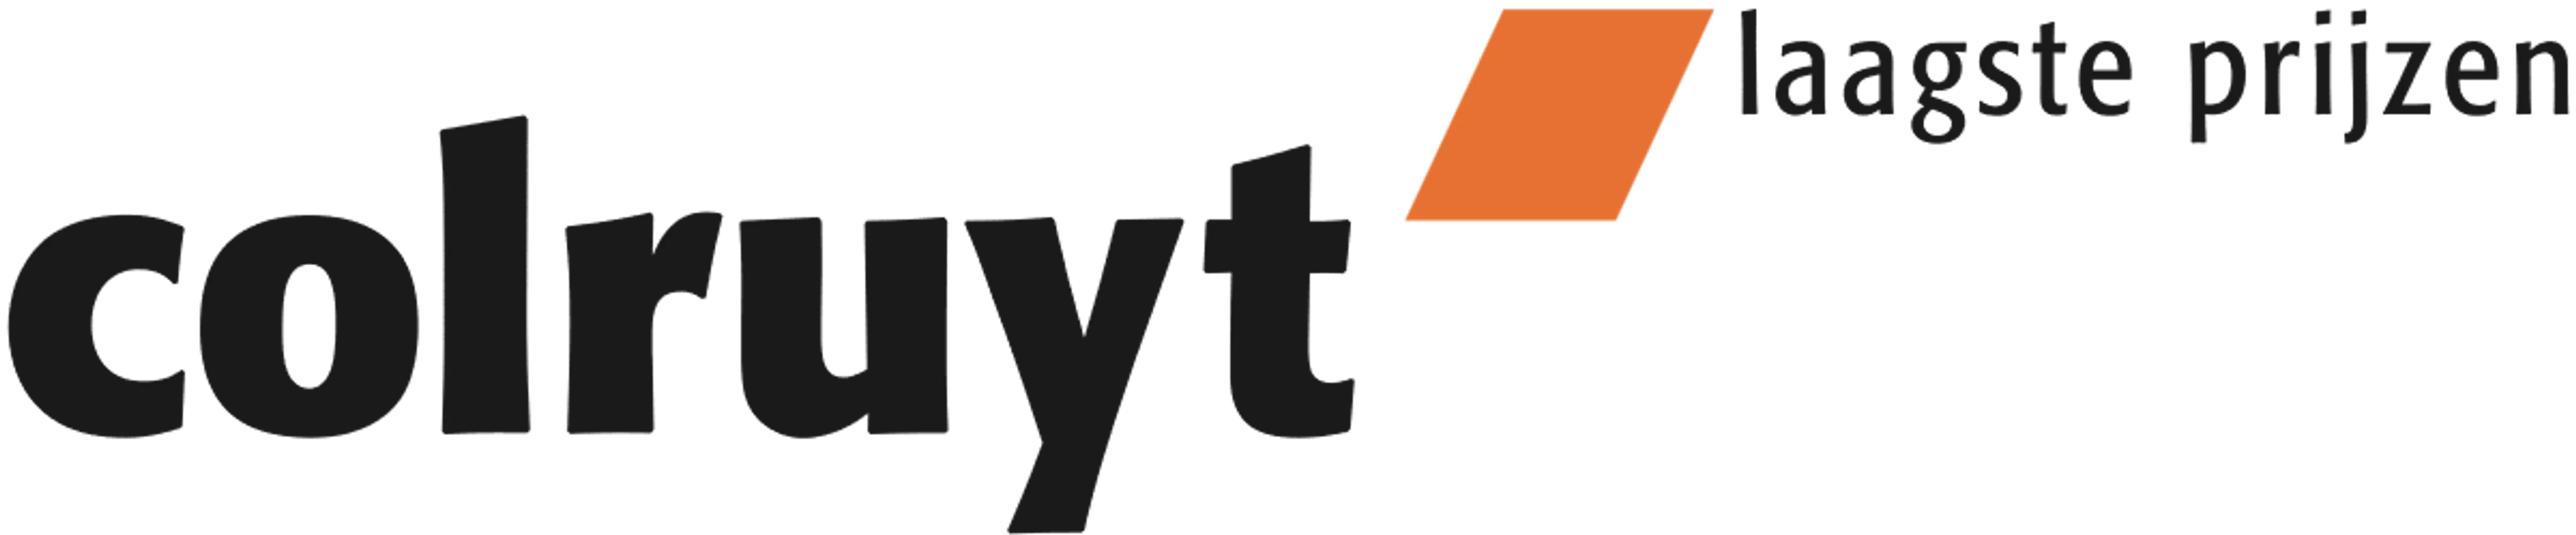 COLRUYT logo